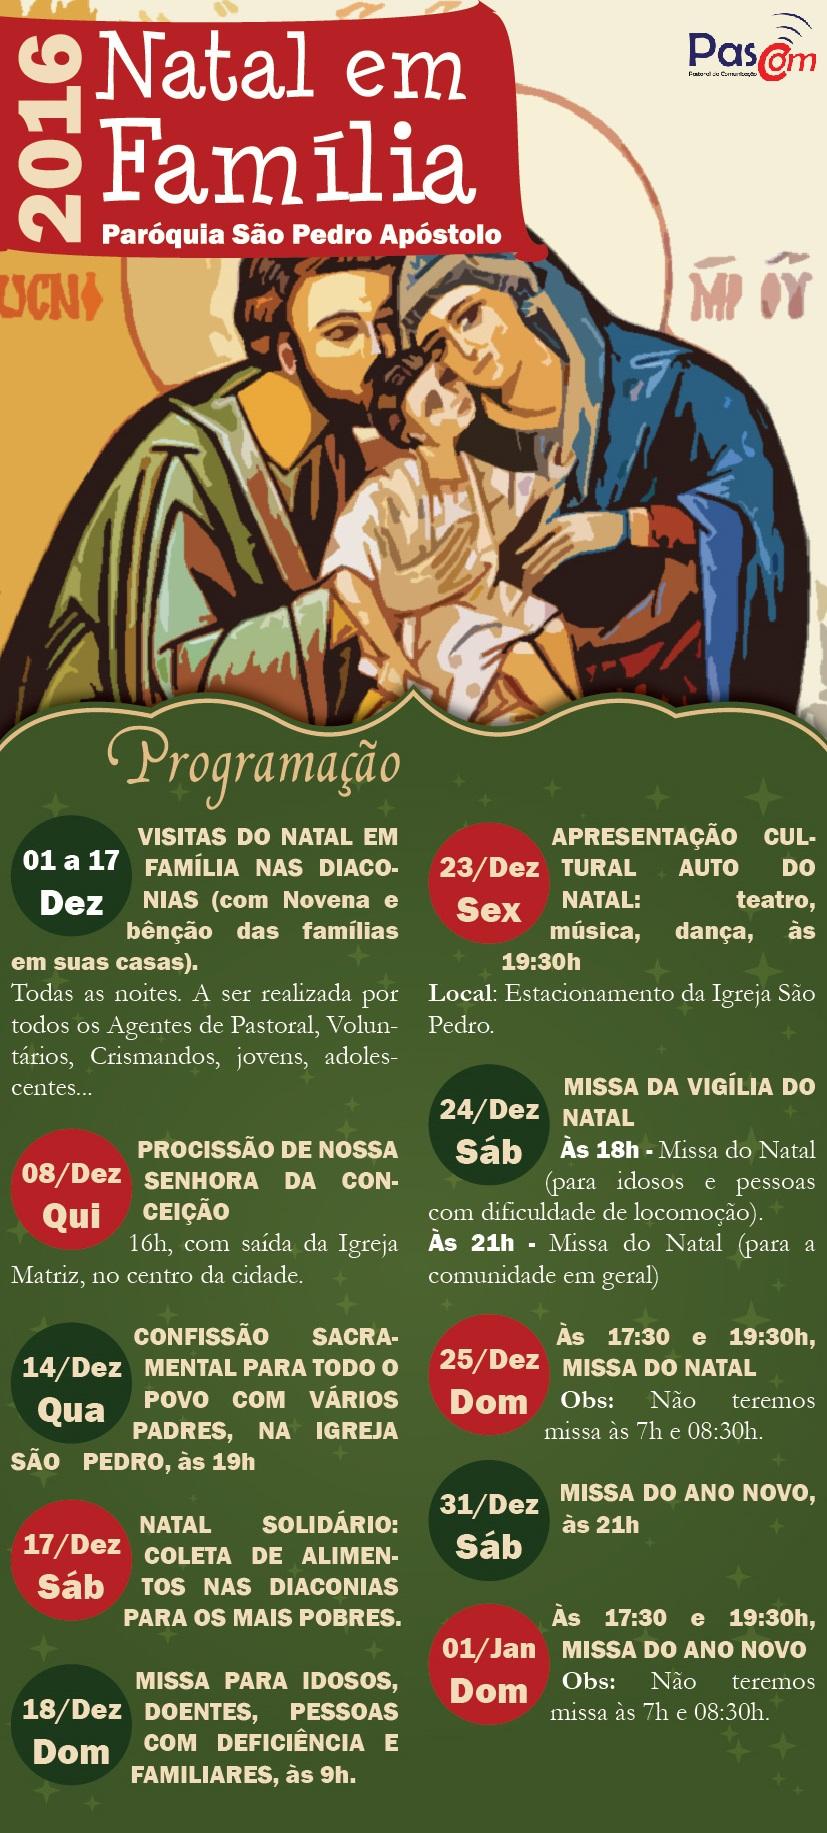 Paróquia São Pedro Apóstolo - Manaus